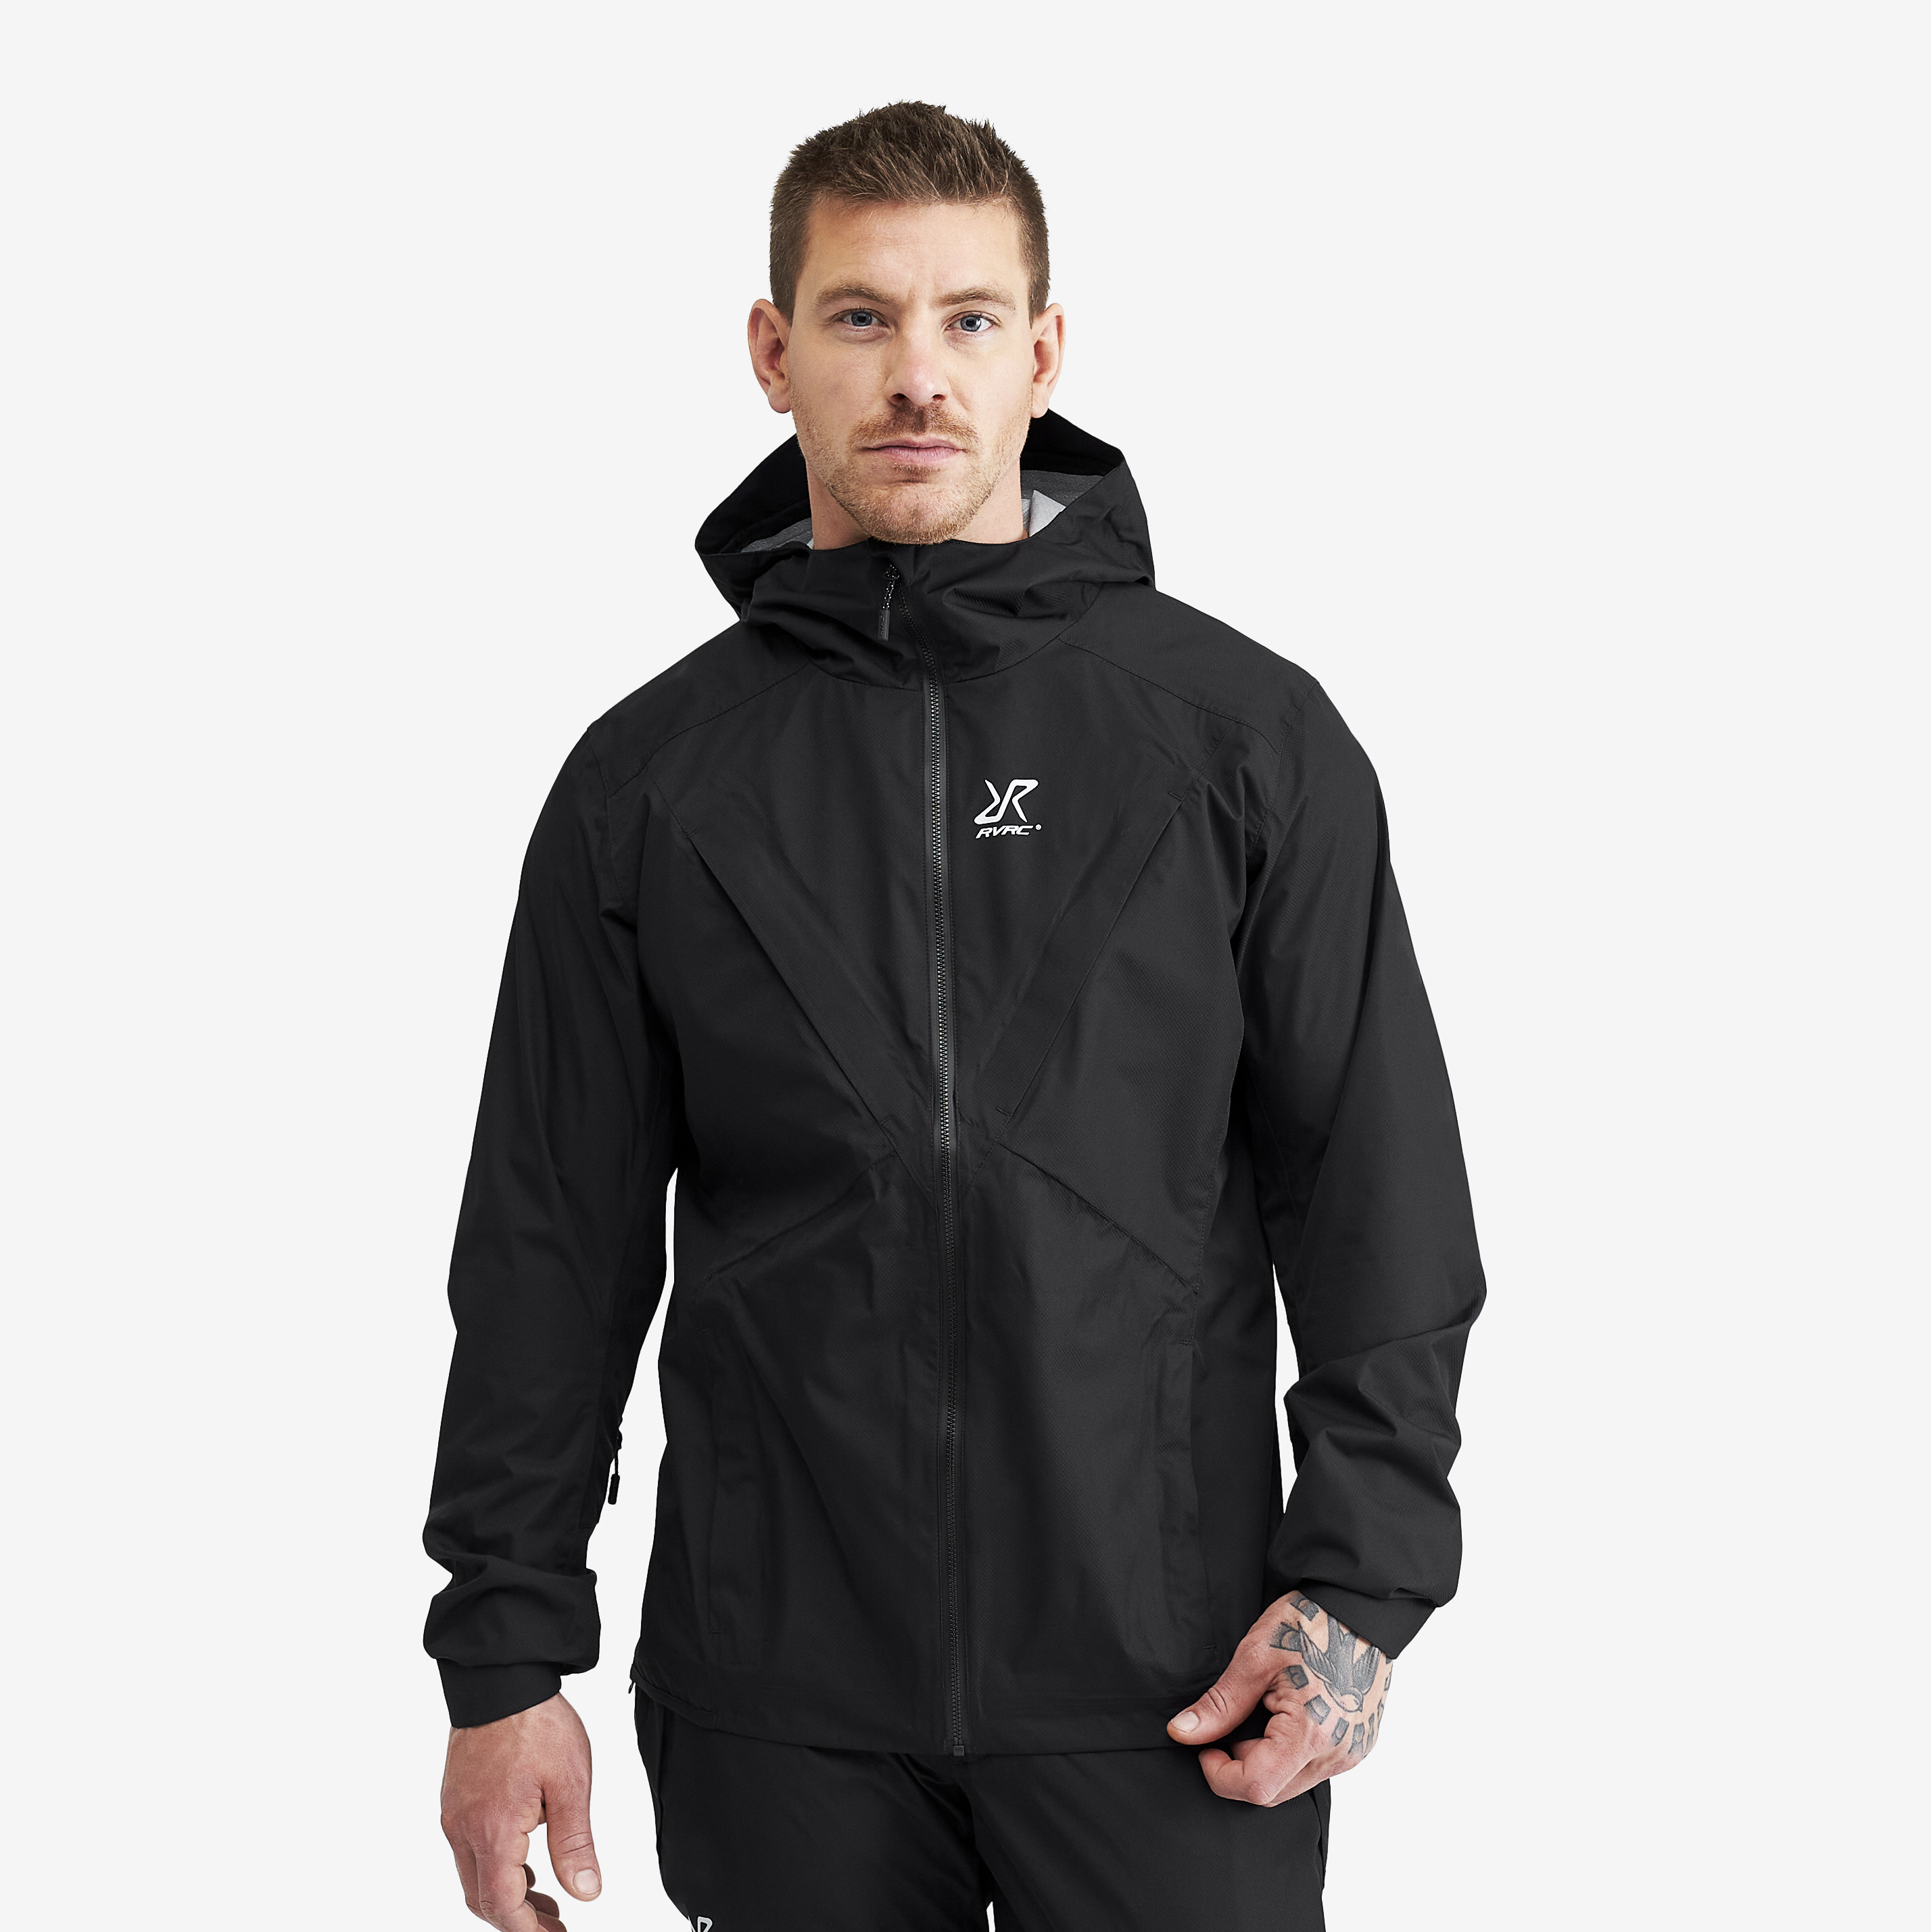 Typhoon nepromokavá bunda pro muže v černé barvě